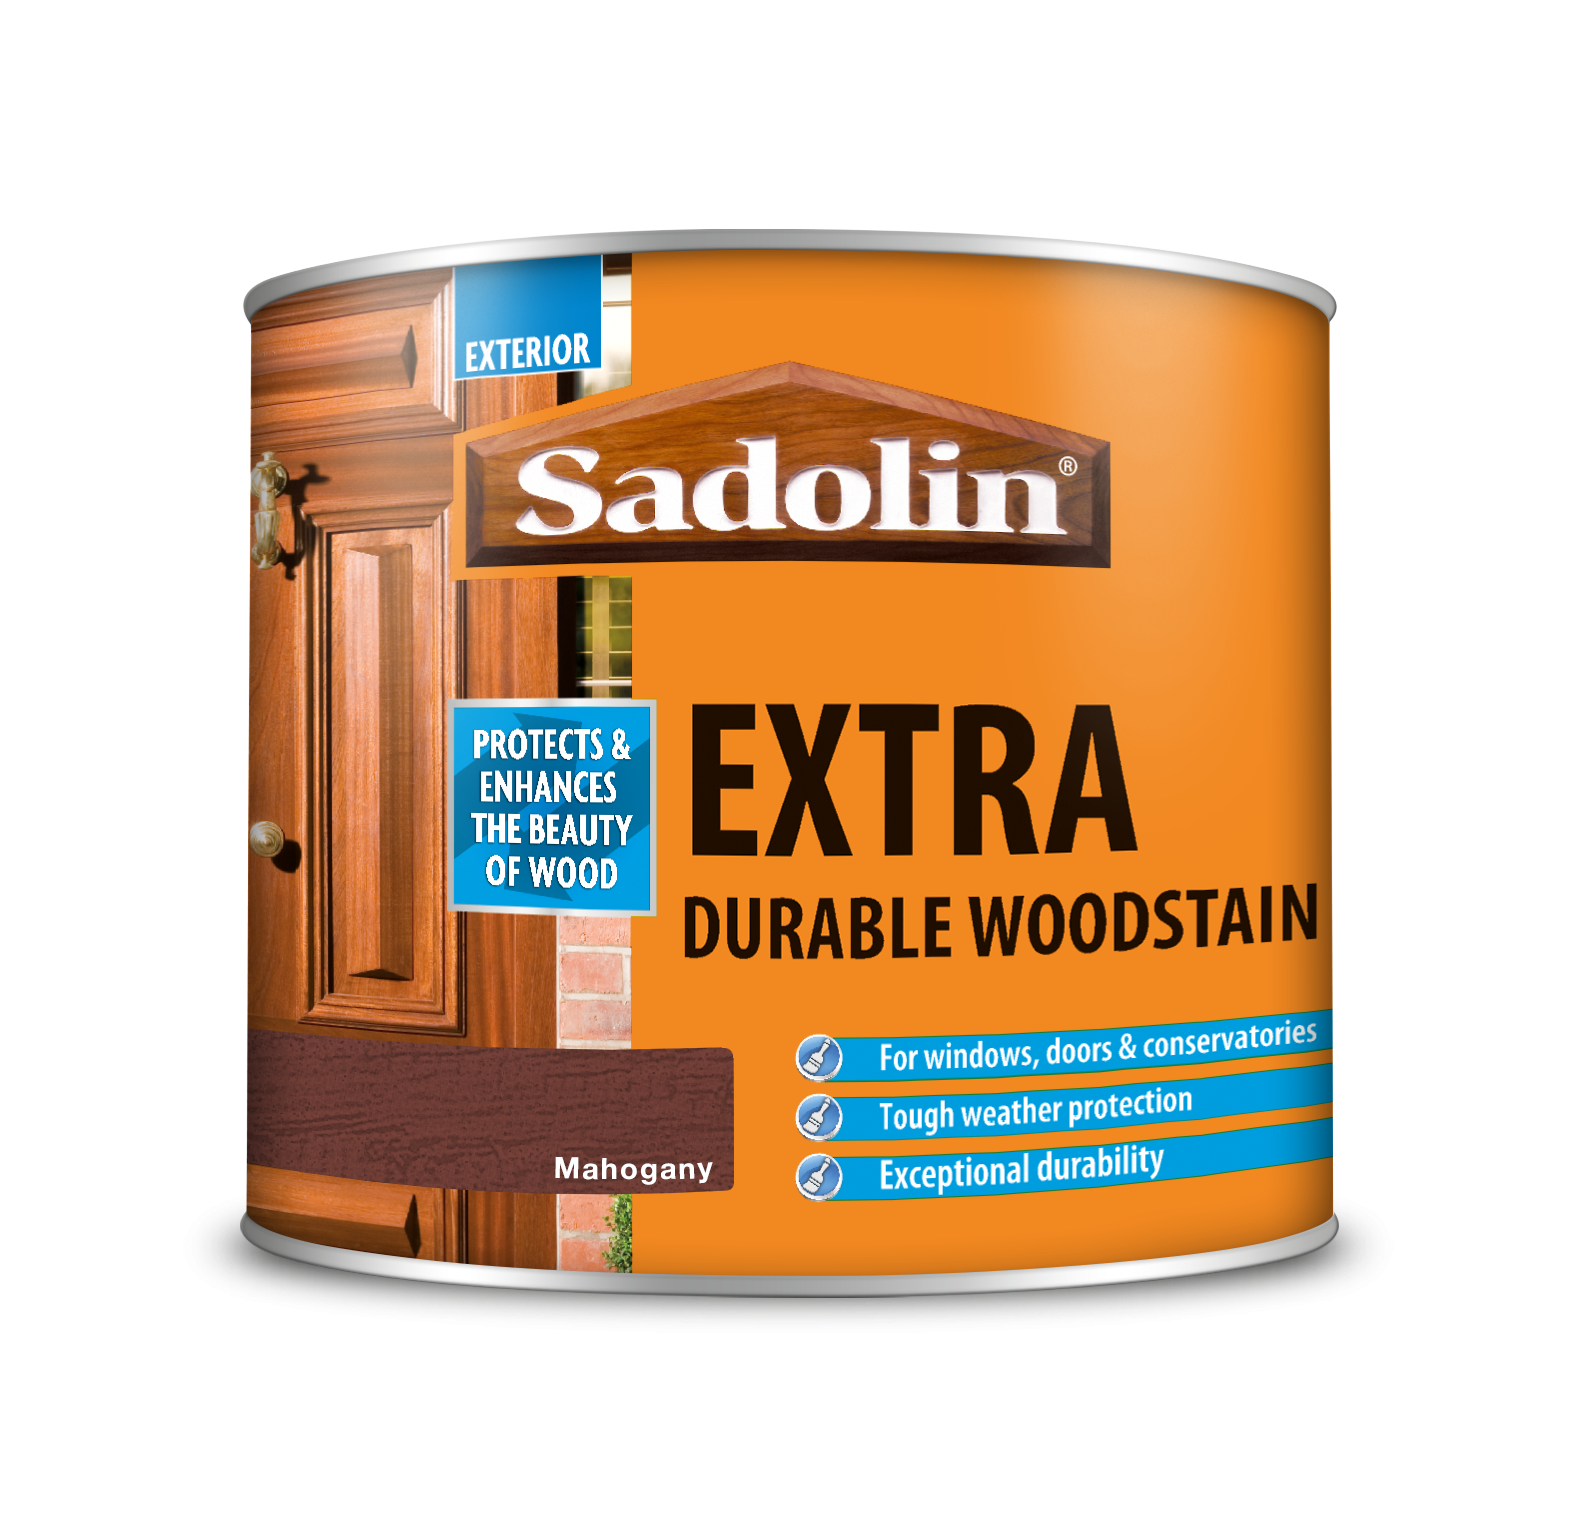 Sadolin Extra Durable Woodstain Mahogany 500ml [MPPSSVF]  5028565